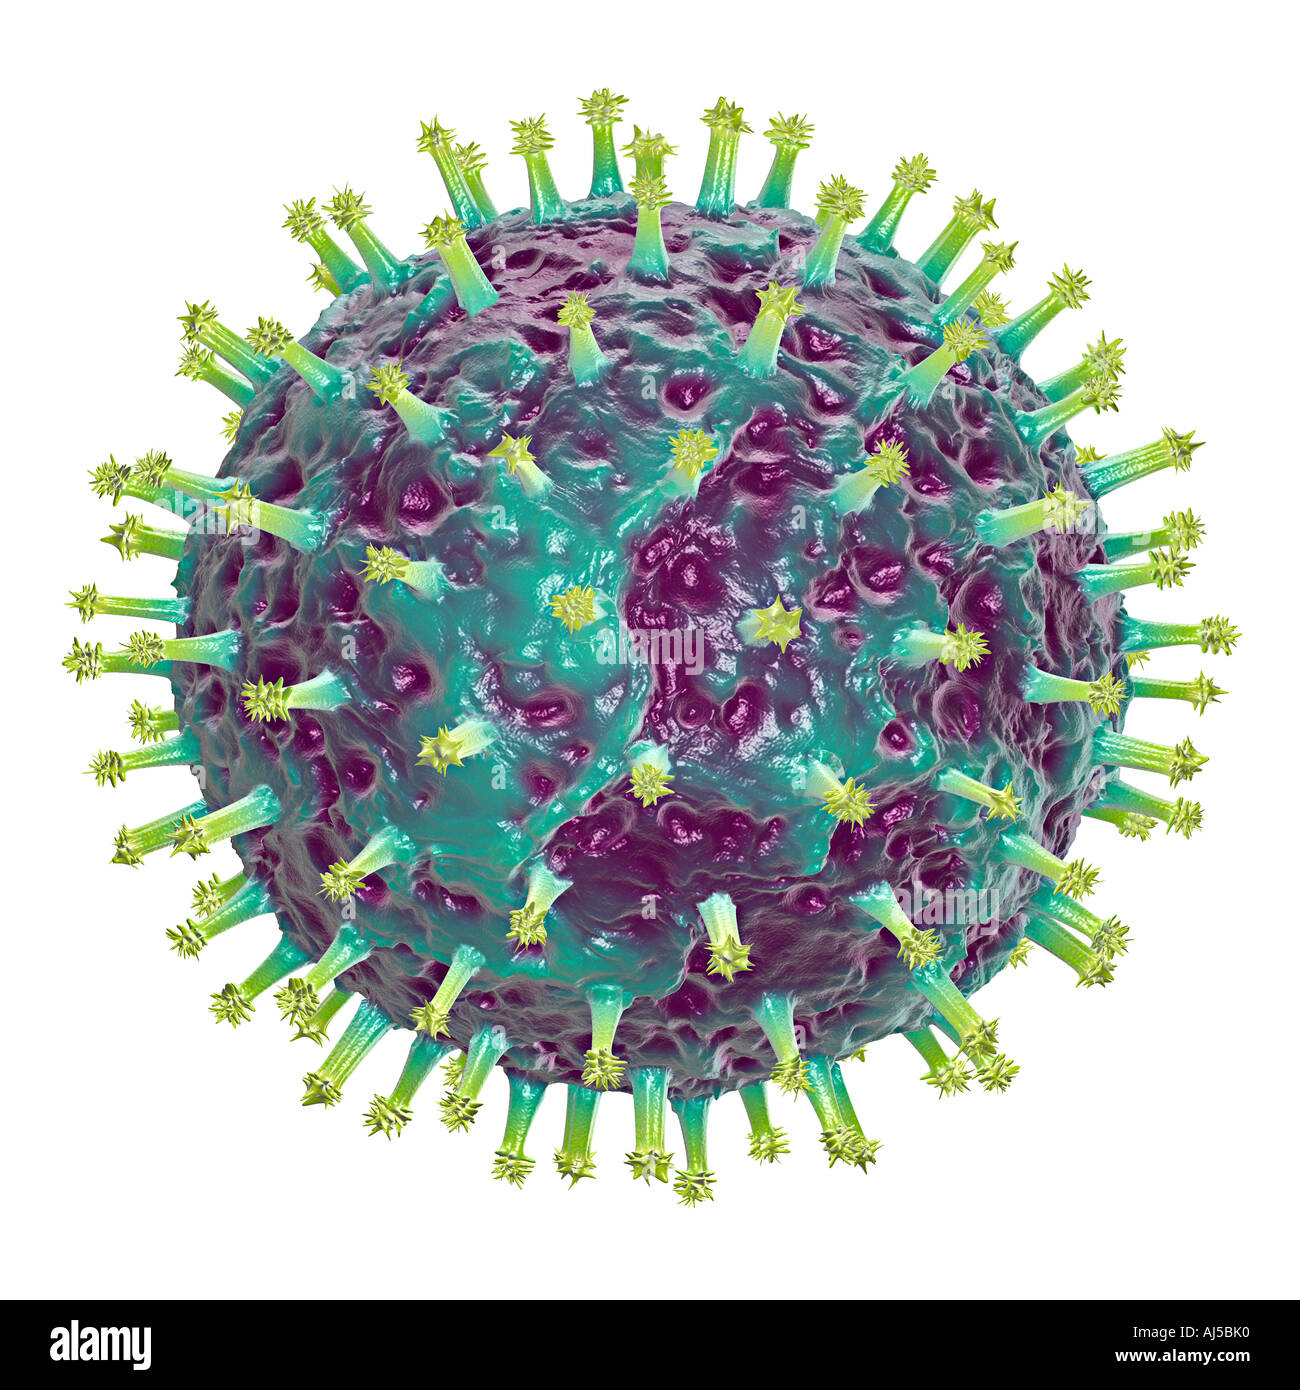 Ilustración del símbolo de virus de infección enfermedad epidemia de peste pestilencia amenaza peligro ciencia pandemia pandemia Foto de stock